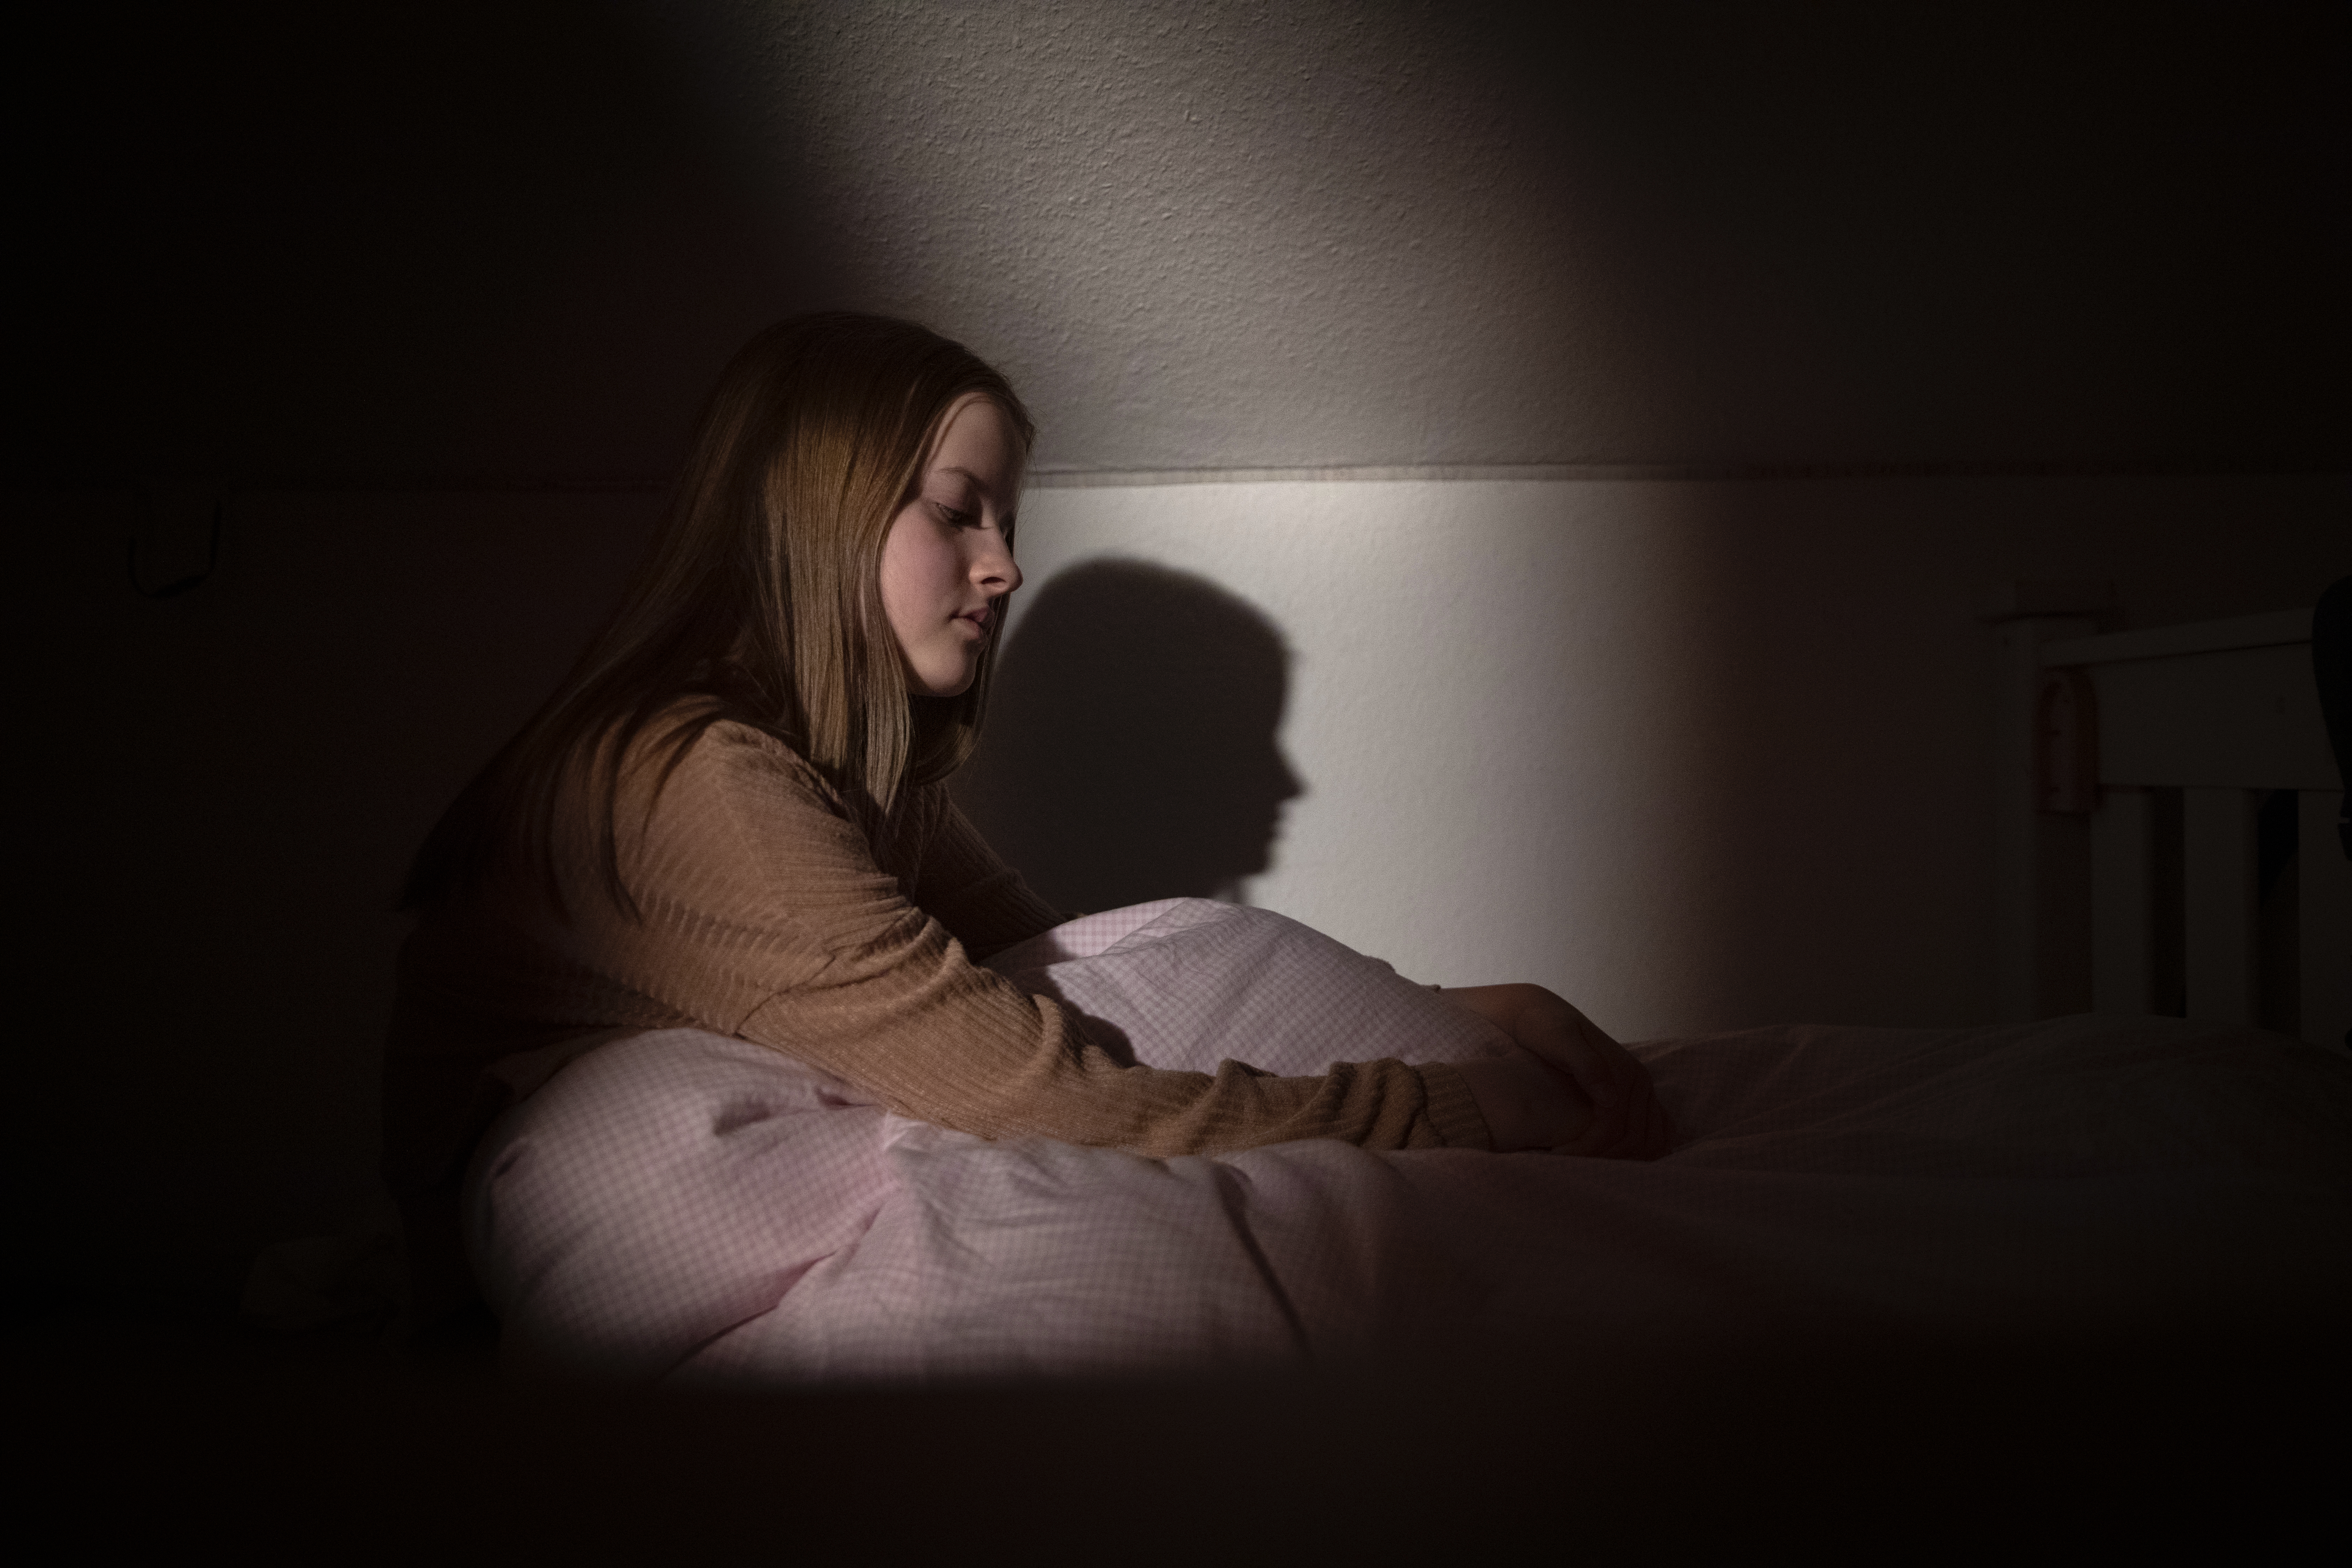 Jugendliche, die nachts bei schwachem Licht im Bett sitzt, mit einem Gesichtsausdruck, der Verzweiflung und Traurigkeit ausdrückt | Quelle: Getty Images